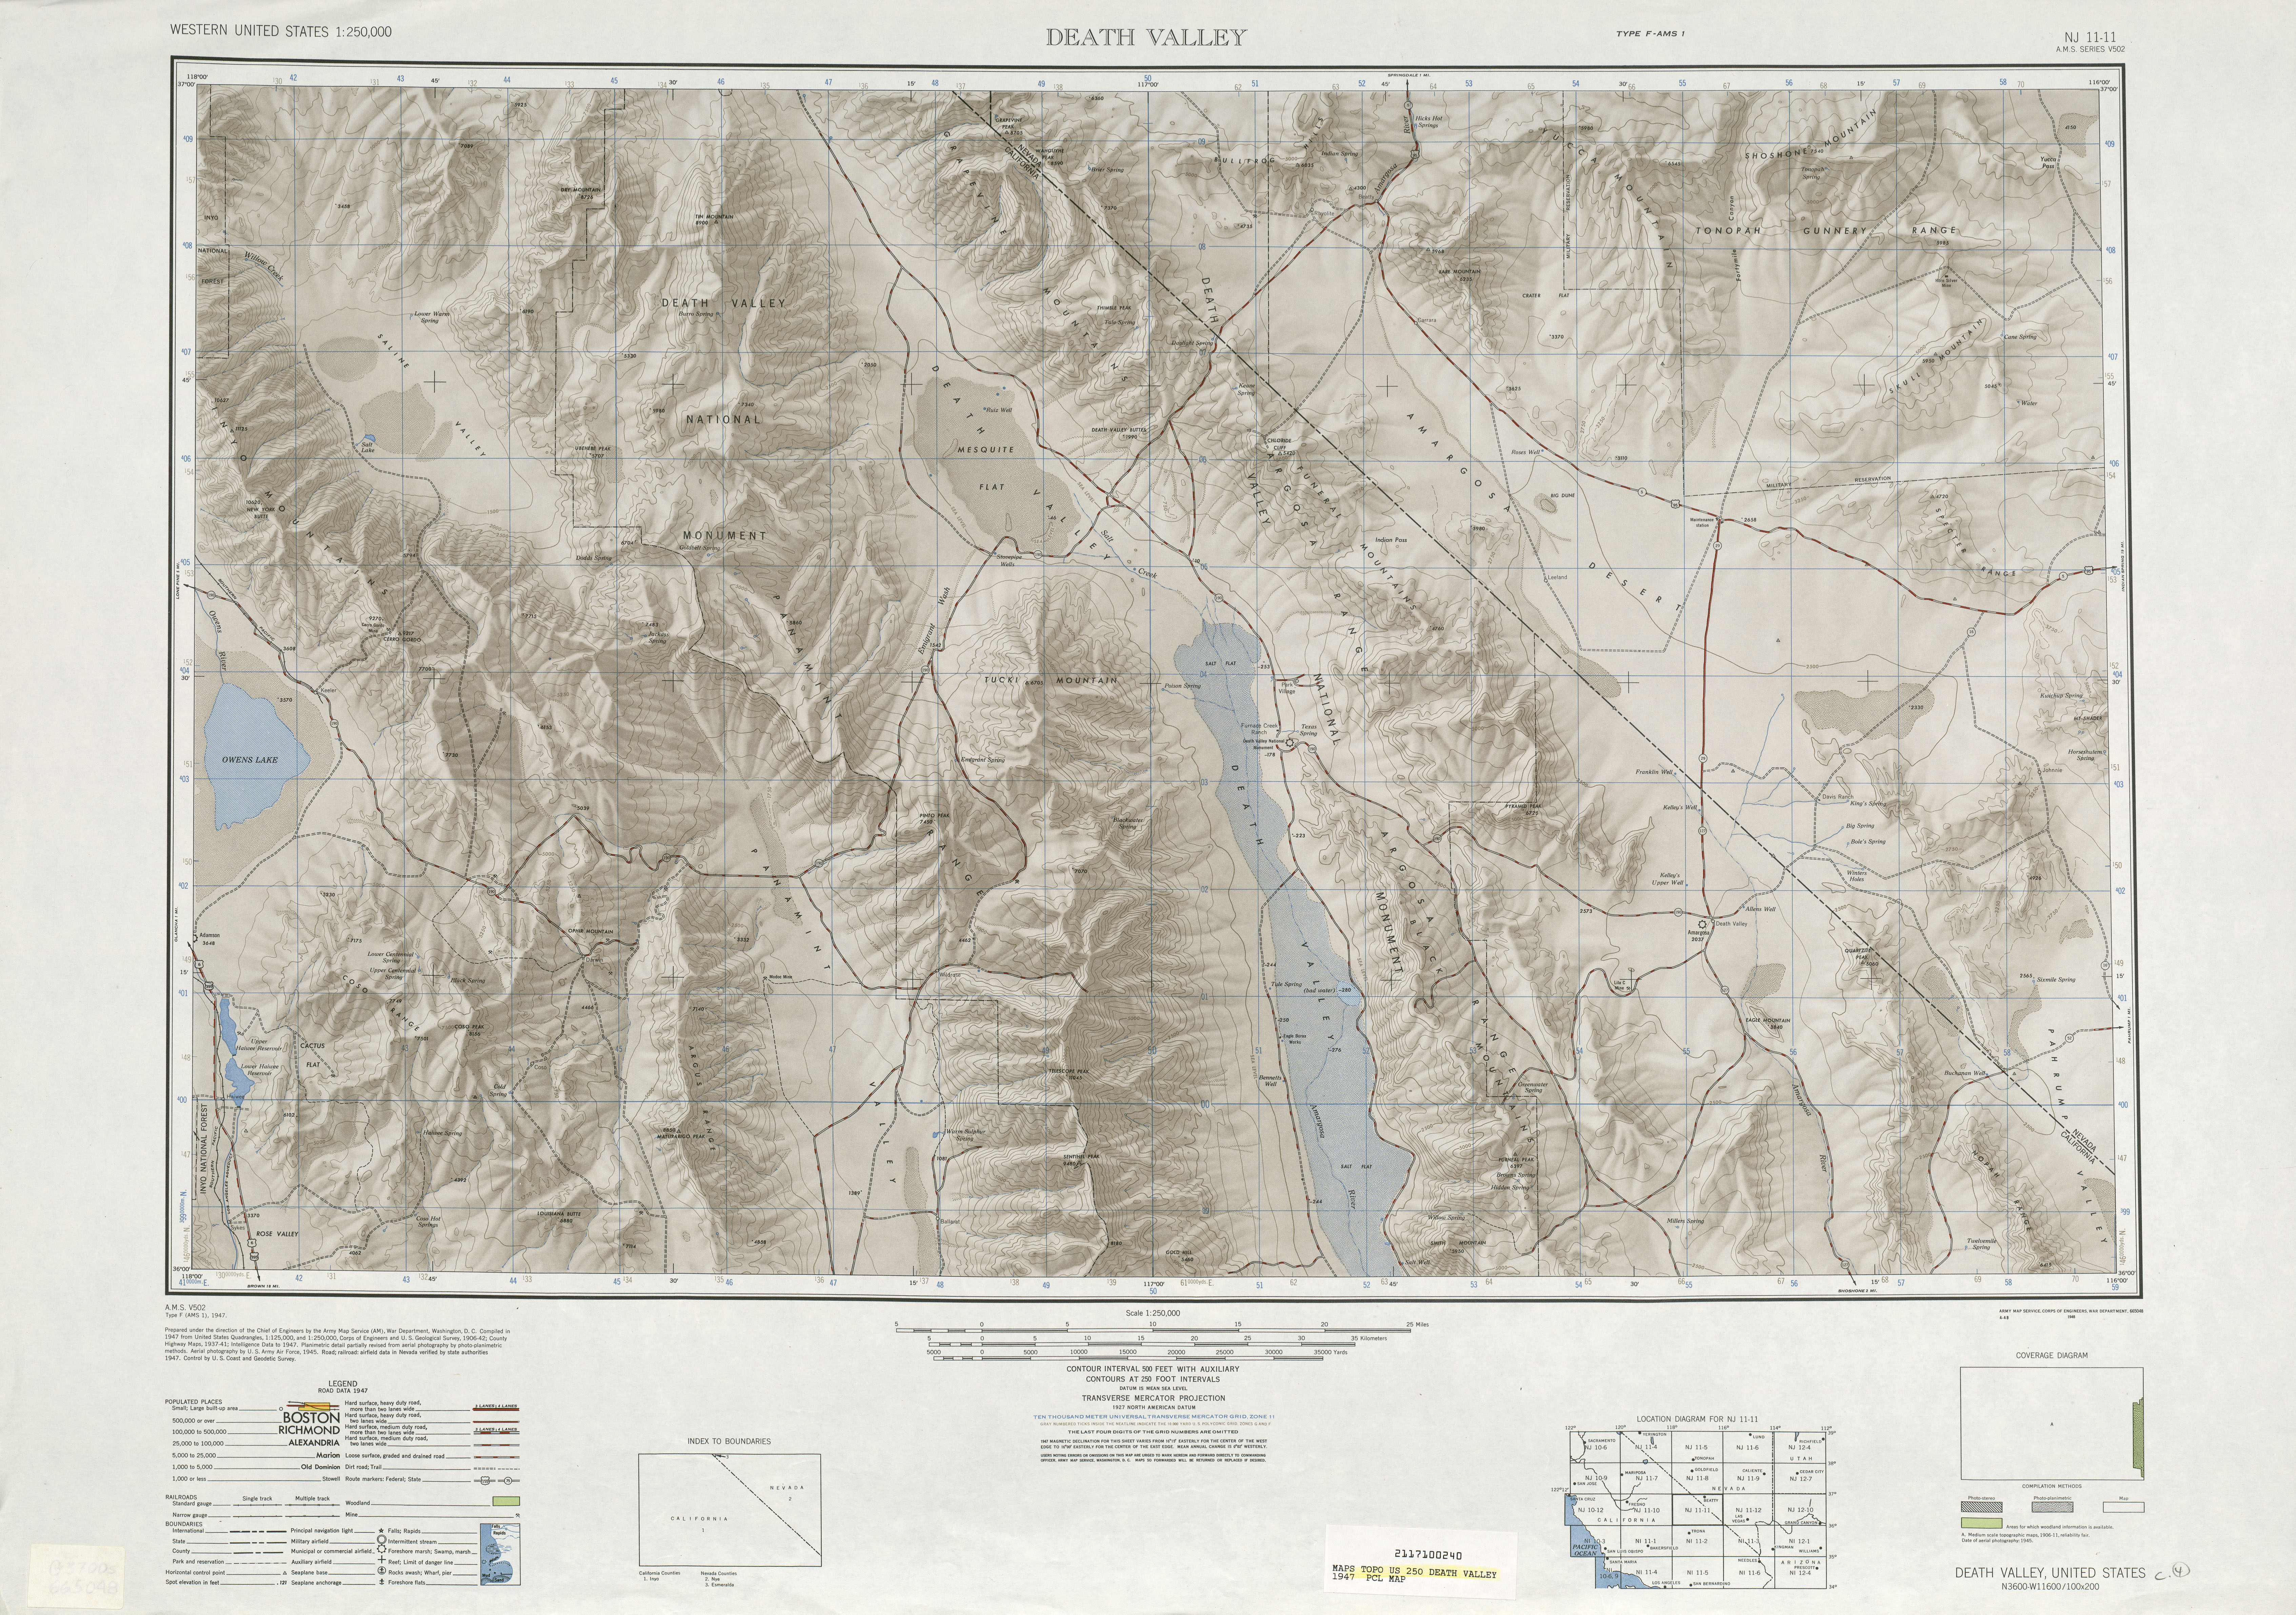 Hoja Death Valle del Mapa de Relieve Sombreado de los Estados Unidos 1947